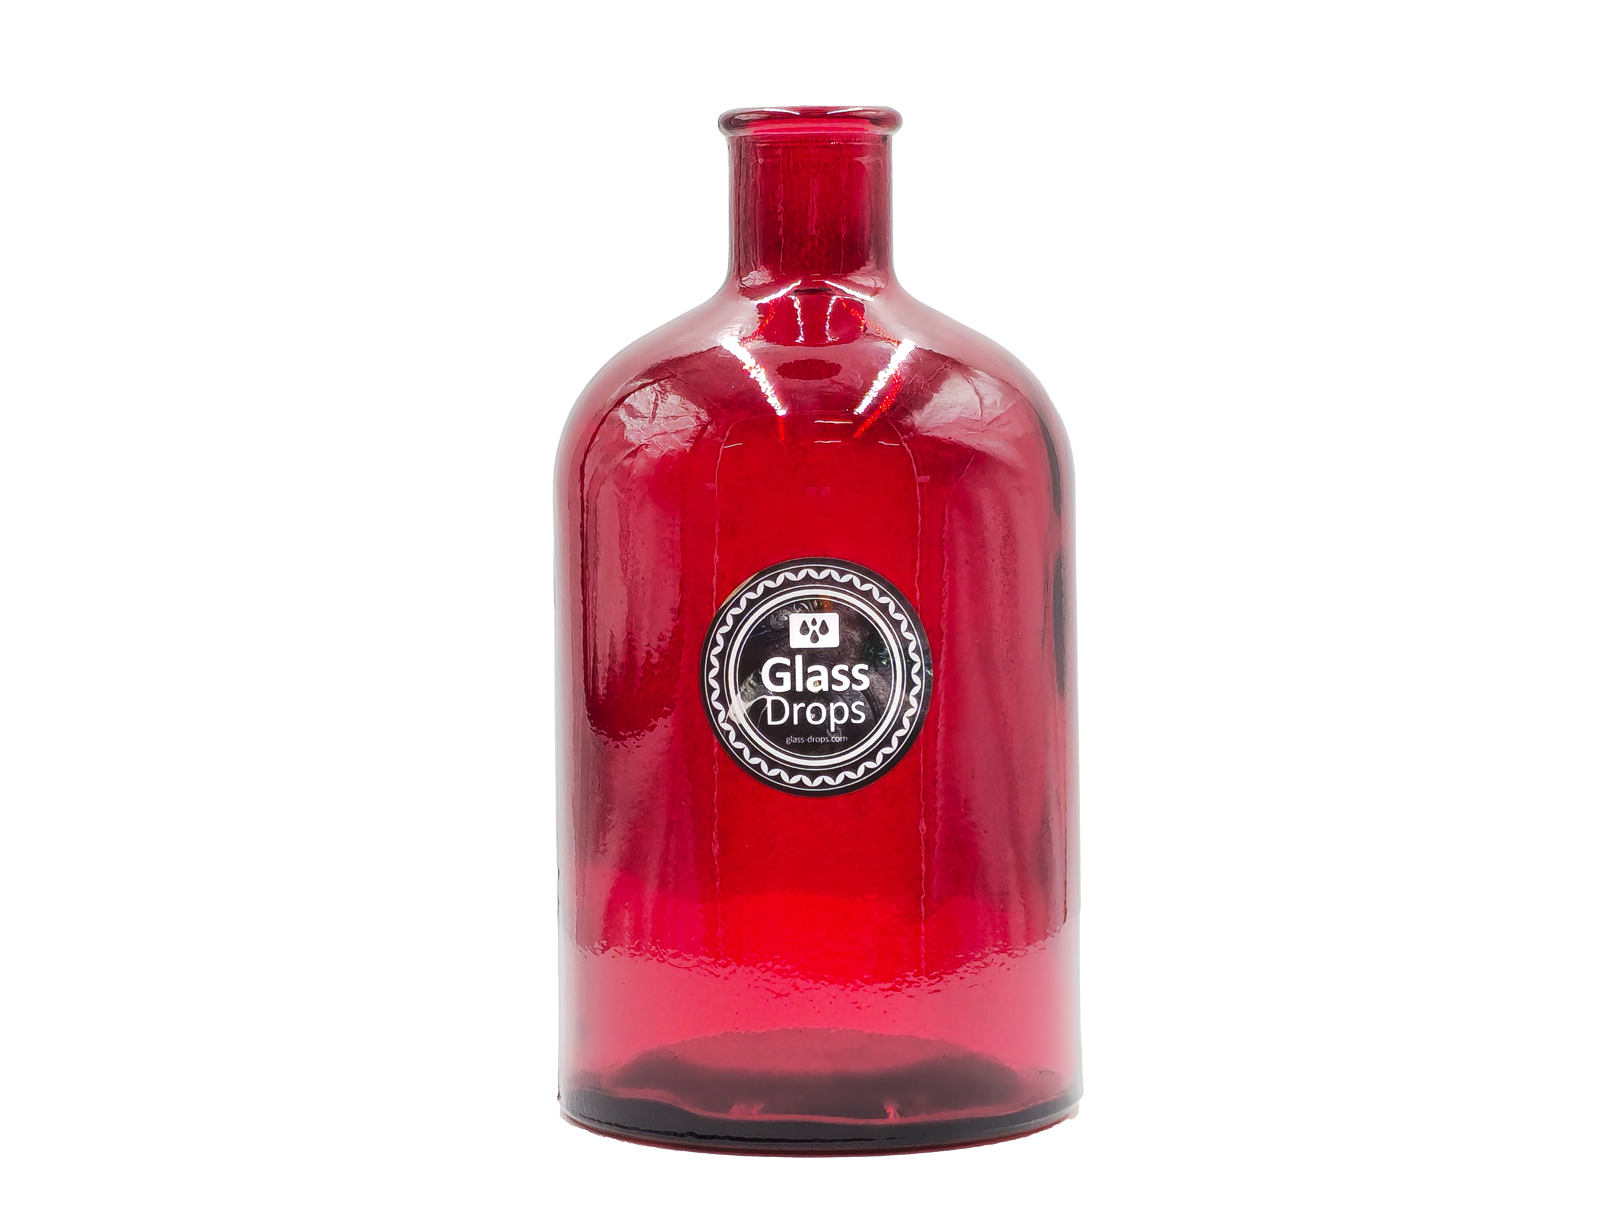 Εικόνα Διακοσμητικό Μπουκάλι Glass Drops Retro (5712DB06) Aπό 100% ανακυκλωμένο γυαλί, Xωρητικότητας 1.35L, Διαστάσεων Ø 11.5 x Υ 22 cm, Red